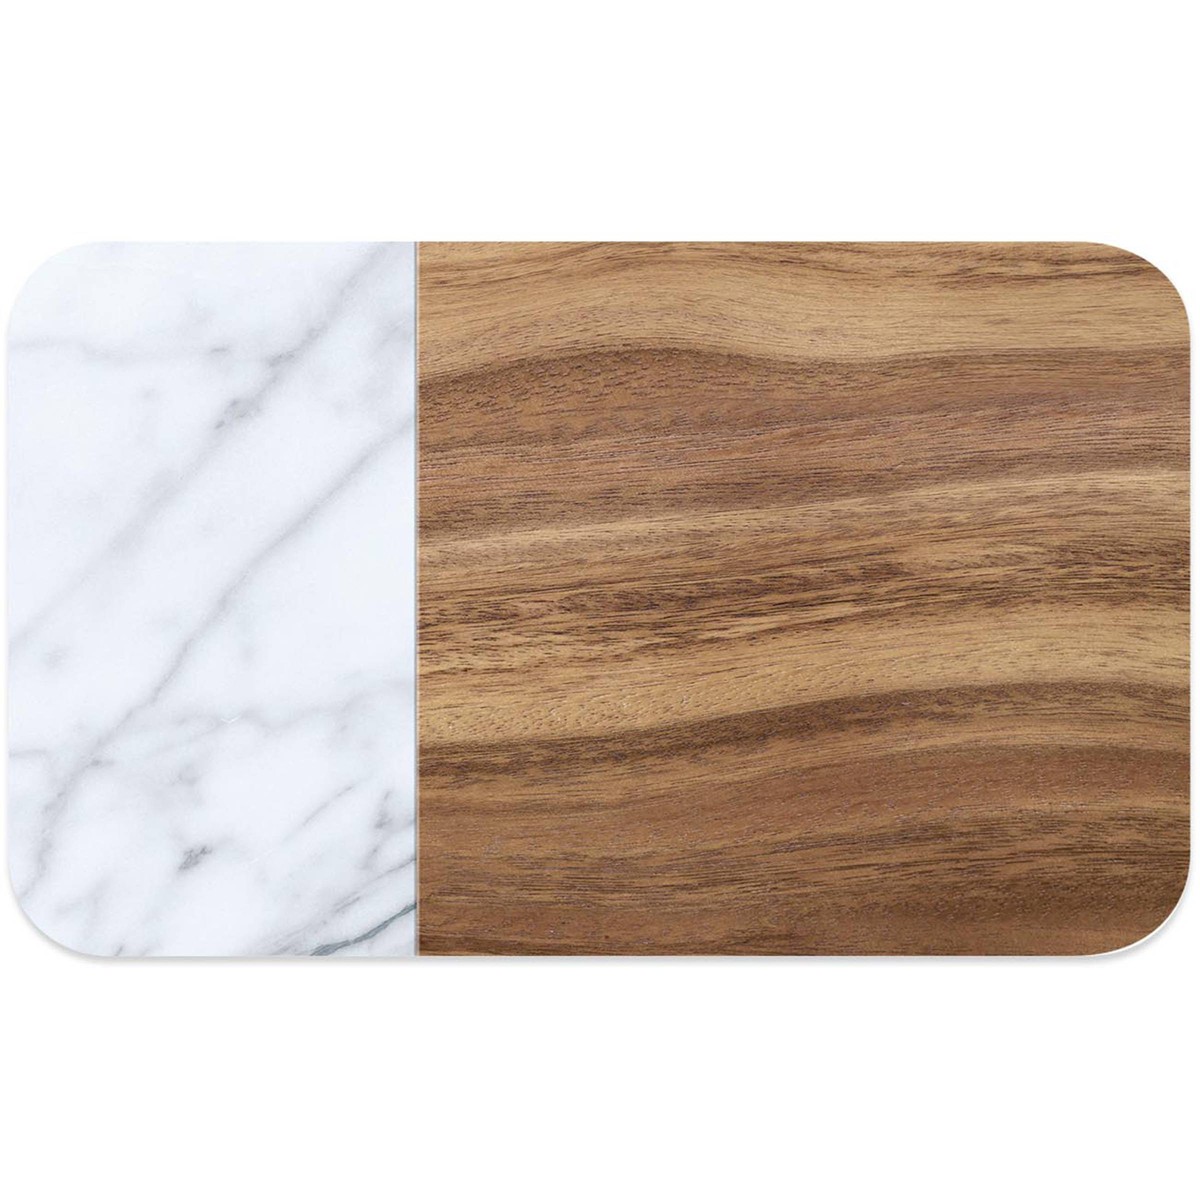   Set de table PVC Carrara, marbre+wood, 29.2 x 48.3 cm, H 2 mm  